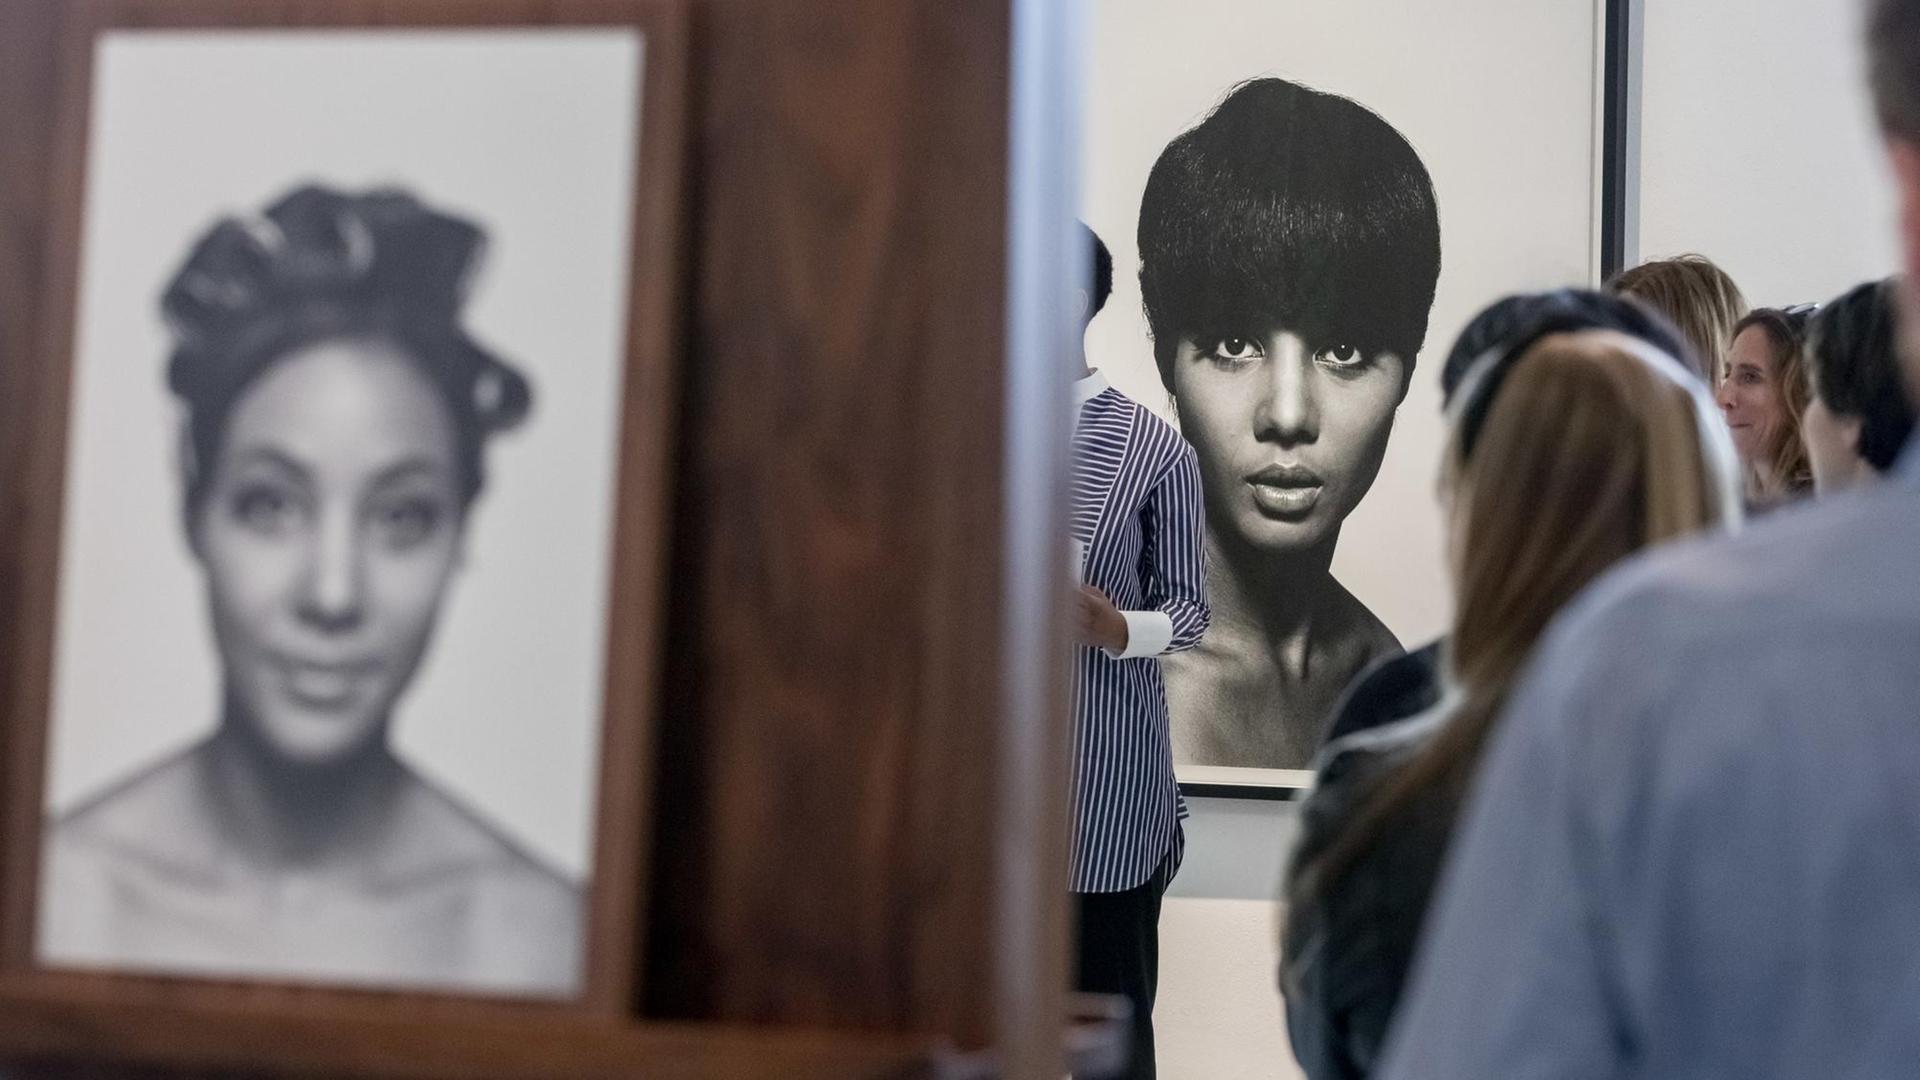 Eine Fotografie von Moneta Sleet Jr. (r.) ist in der Ausstellung "The Black Image Corporation" im Martin-Gropius-Bau hinter Besuchern einer Pressekonferenz zu sehen.